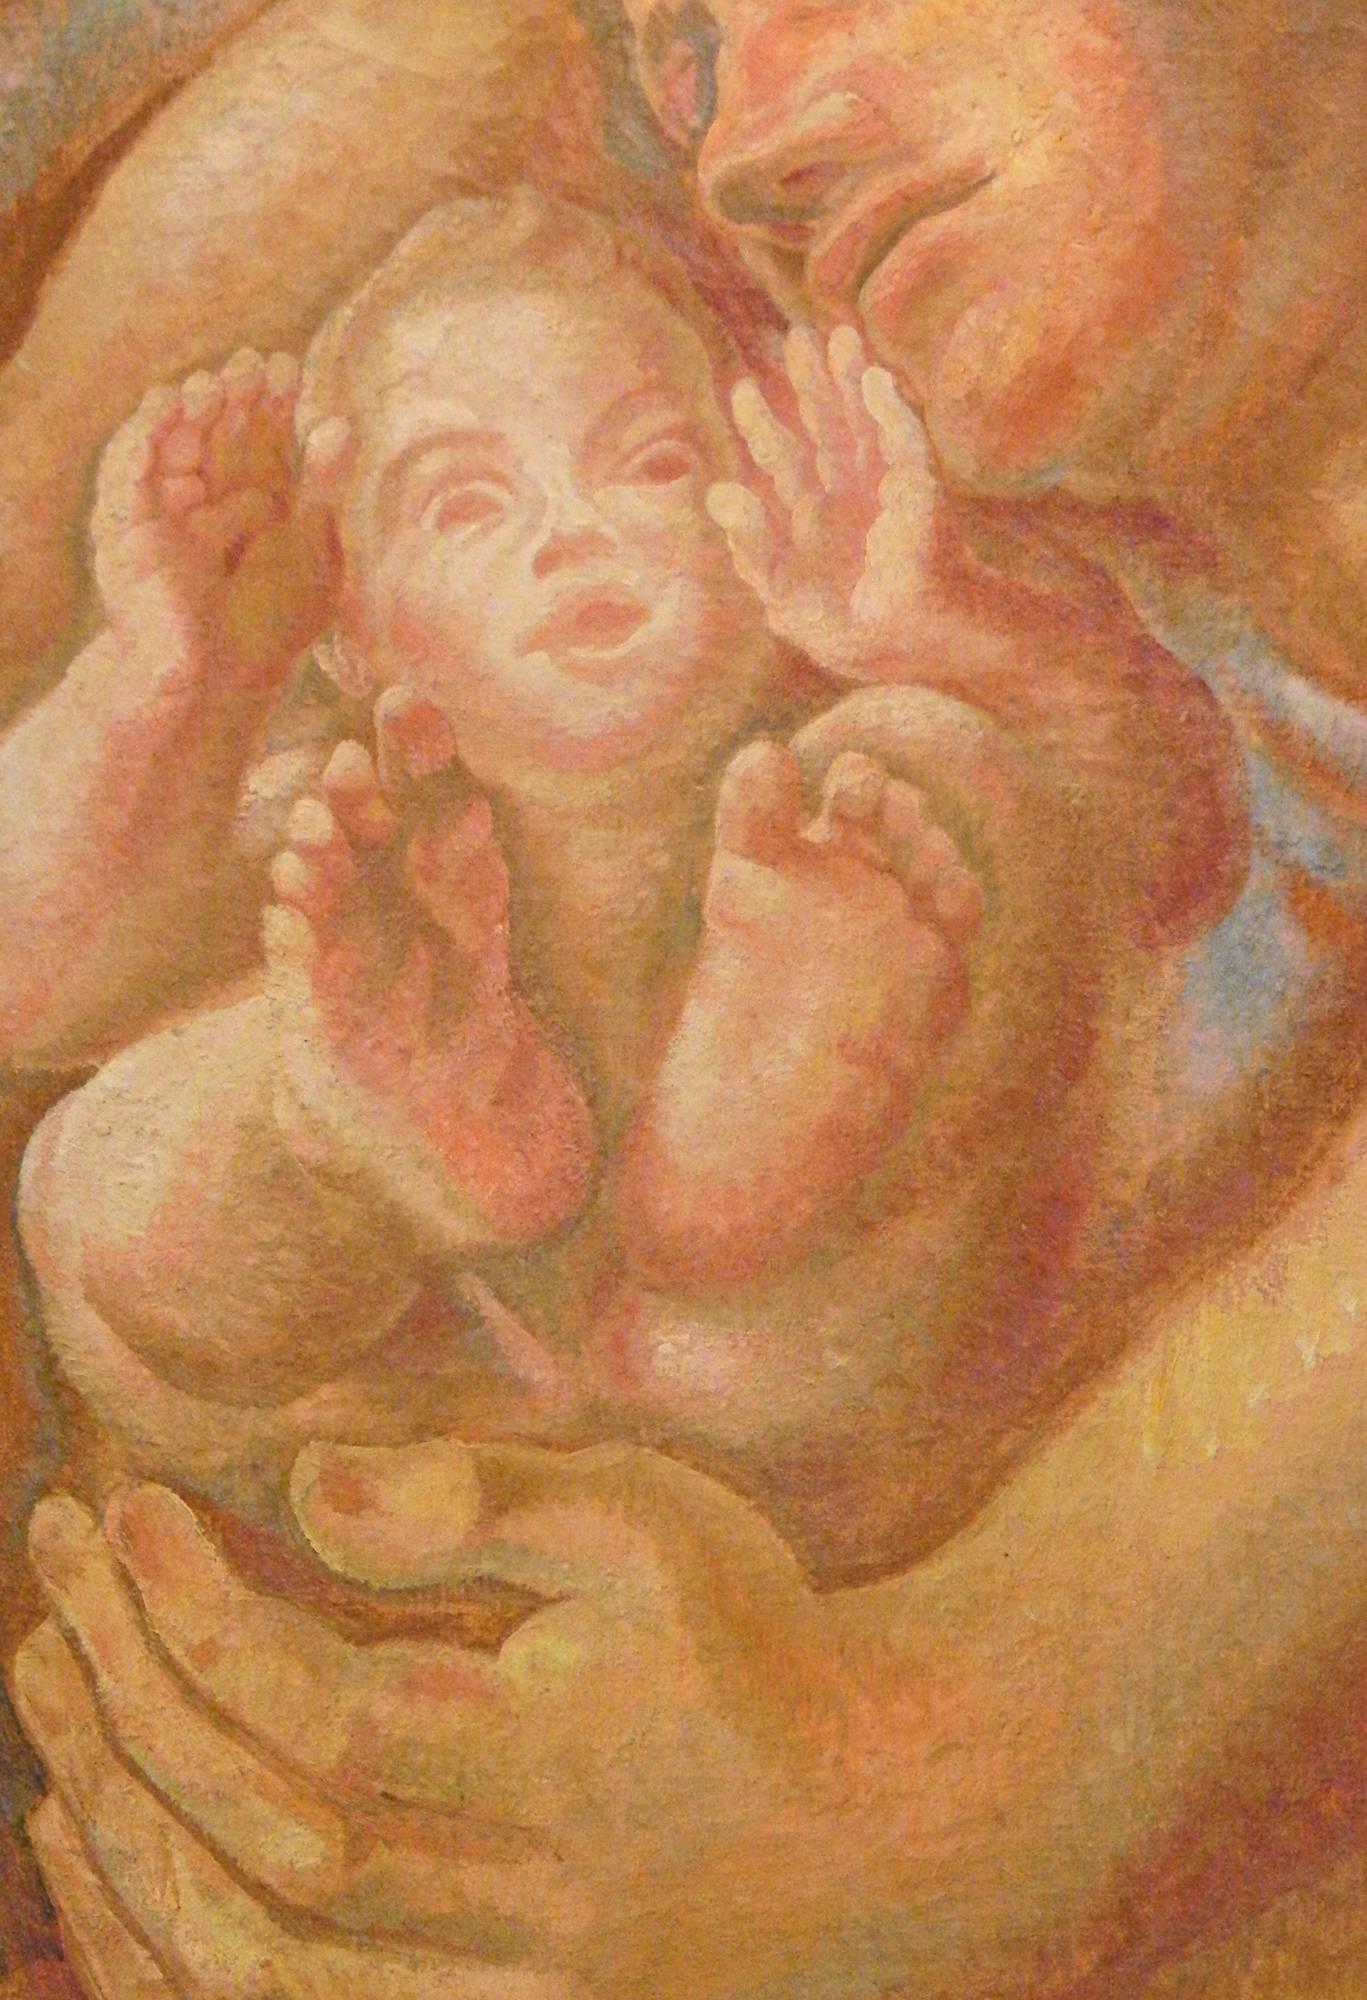 Rayonnante de tendresse, d'amour et de chaleur, cette représentation d'un père endormi, le bras protégeant son petit garçon, a été peinte par Svatopluk Machal, un peintre tchèque, dans les années 1930. Rappelant fortement le travail réalisé par les